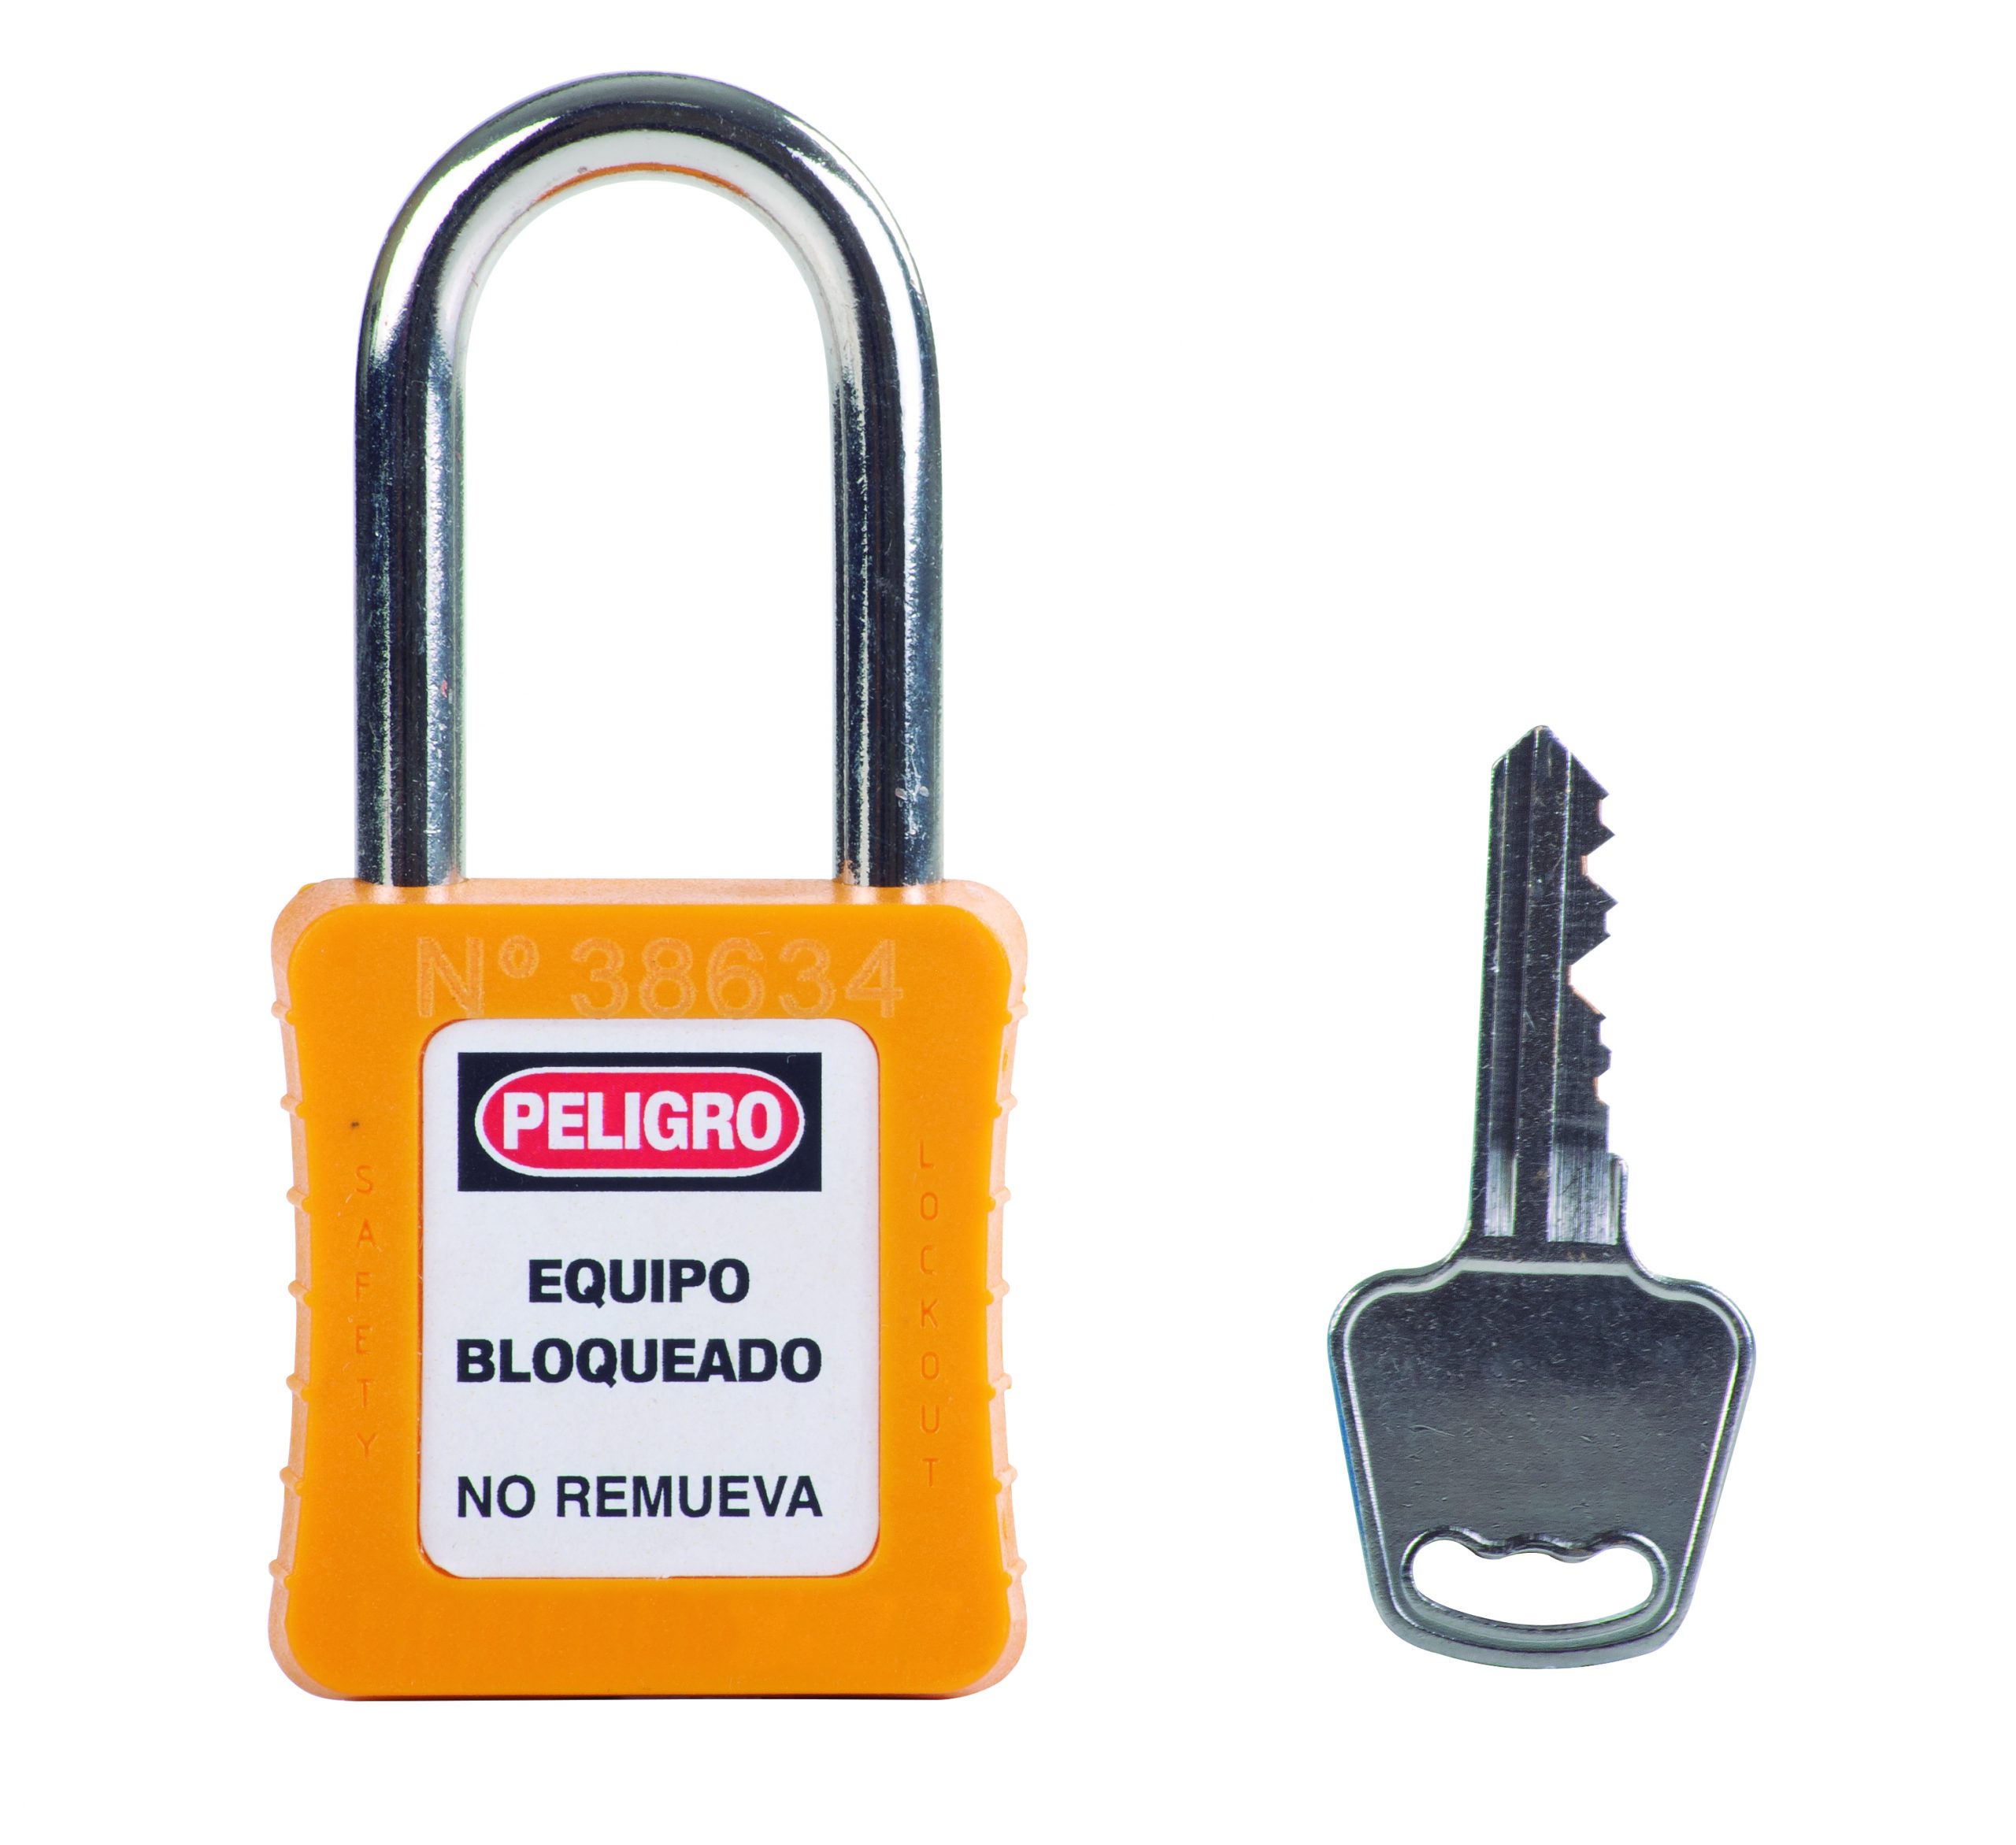 Candados de aluminio para bloqueo LOTO de seguridad - De llaves iguales,  Rojo, Arco de acero